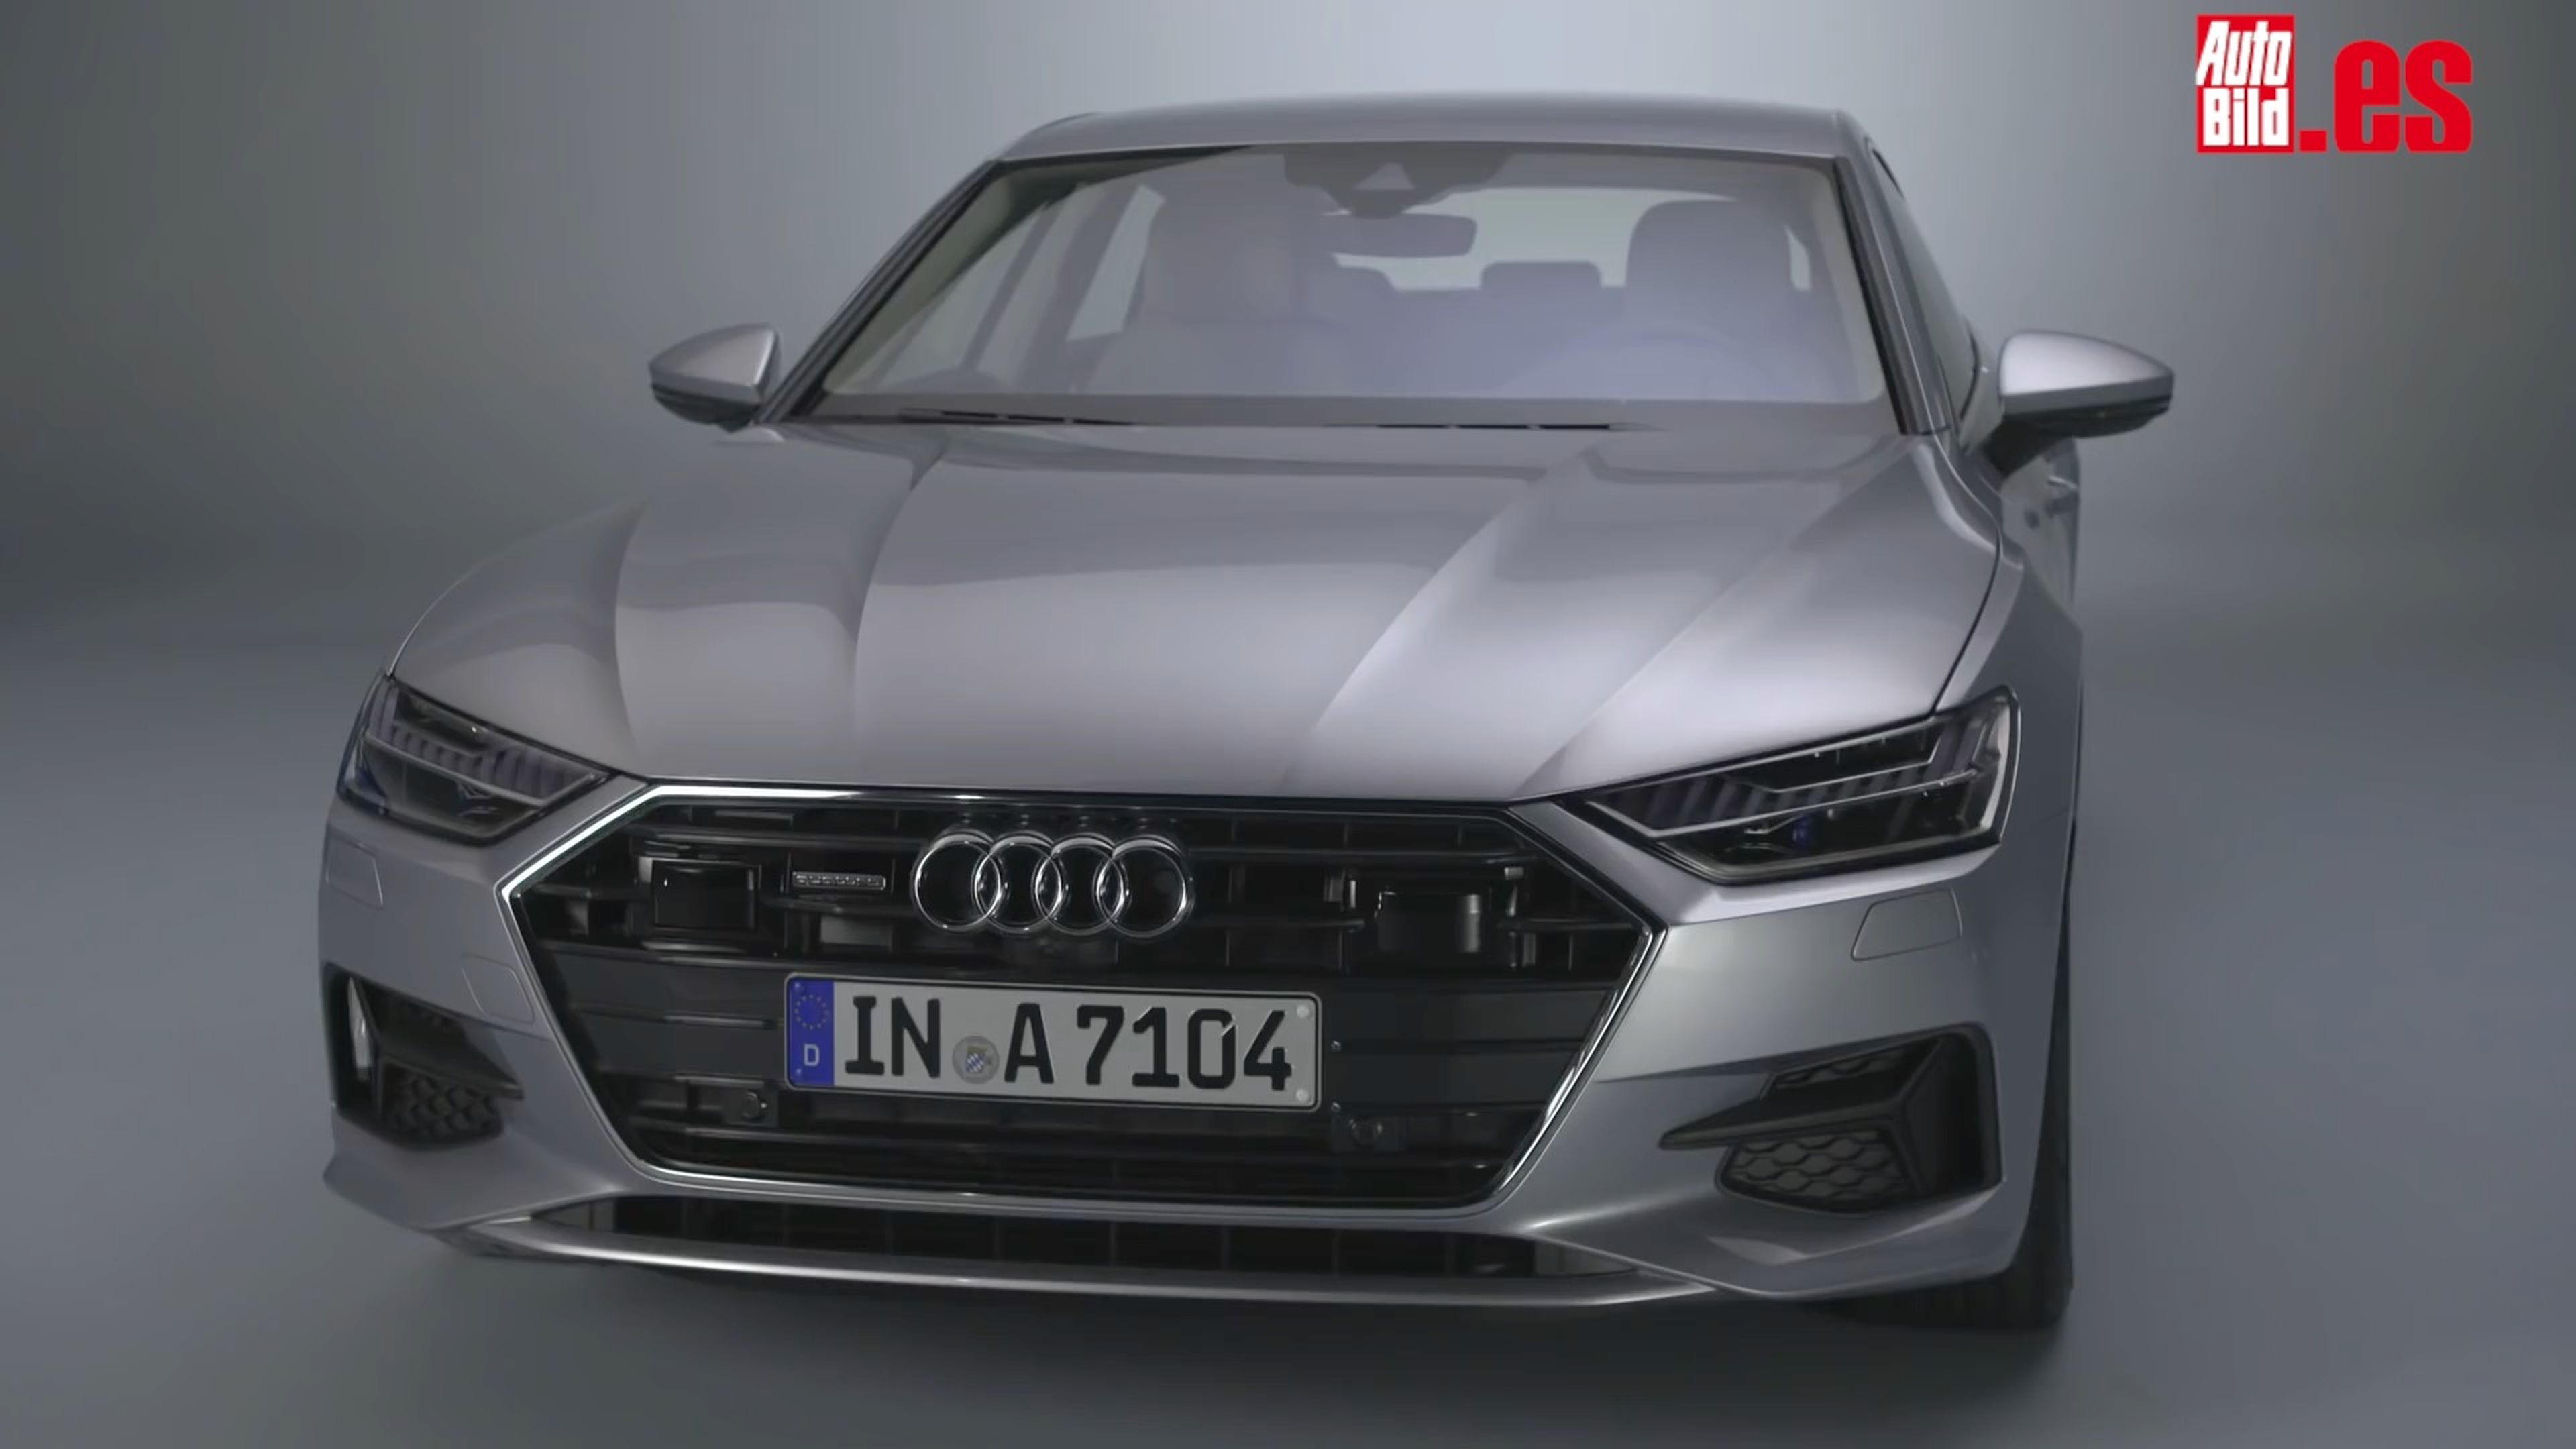 VÍDEO: así es centímetro a centímetro el nuevo Audi A7 2017